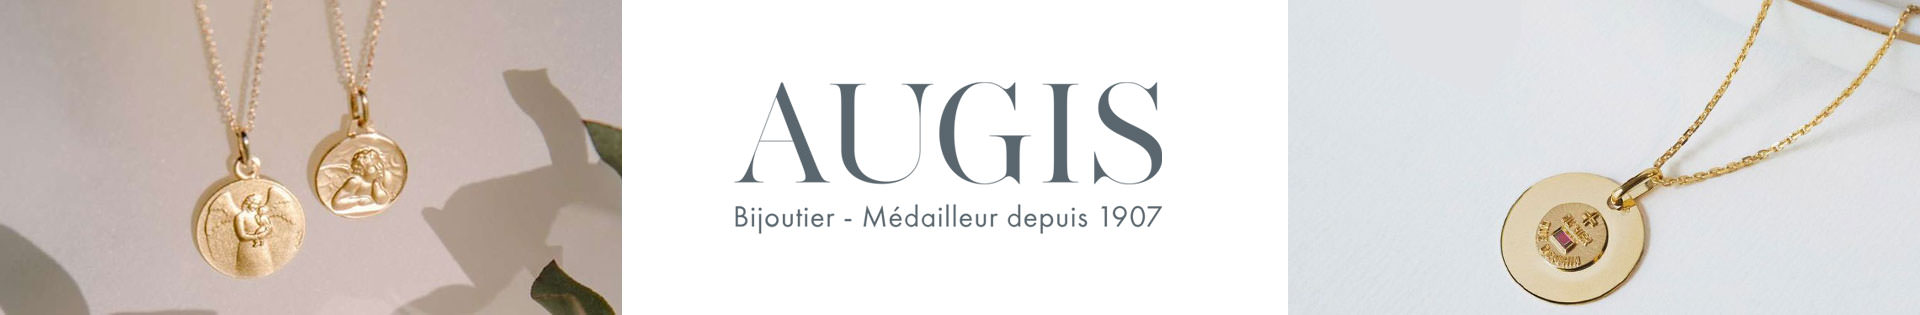 Marques de bijoux - A.Augis - or 750 millièmes